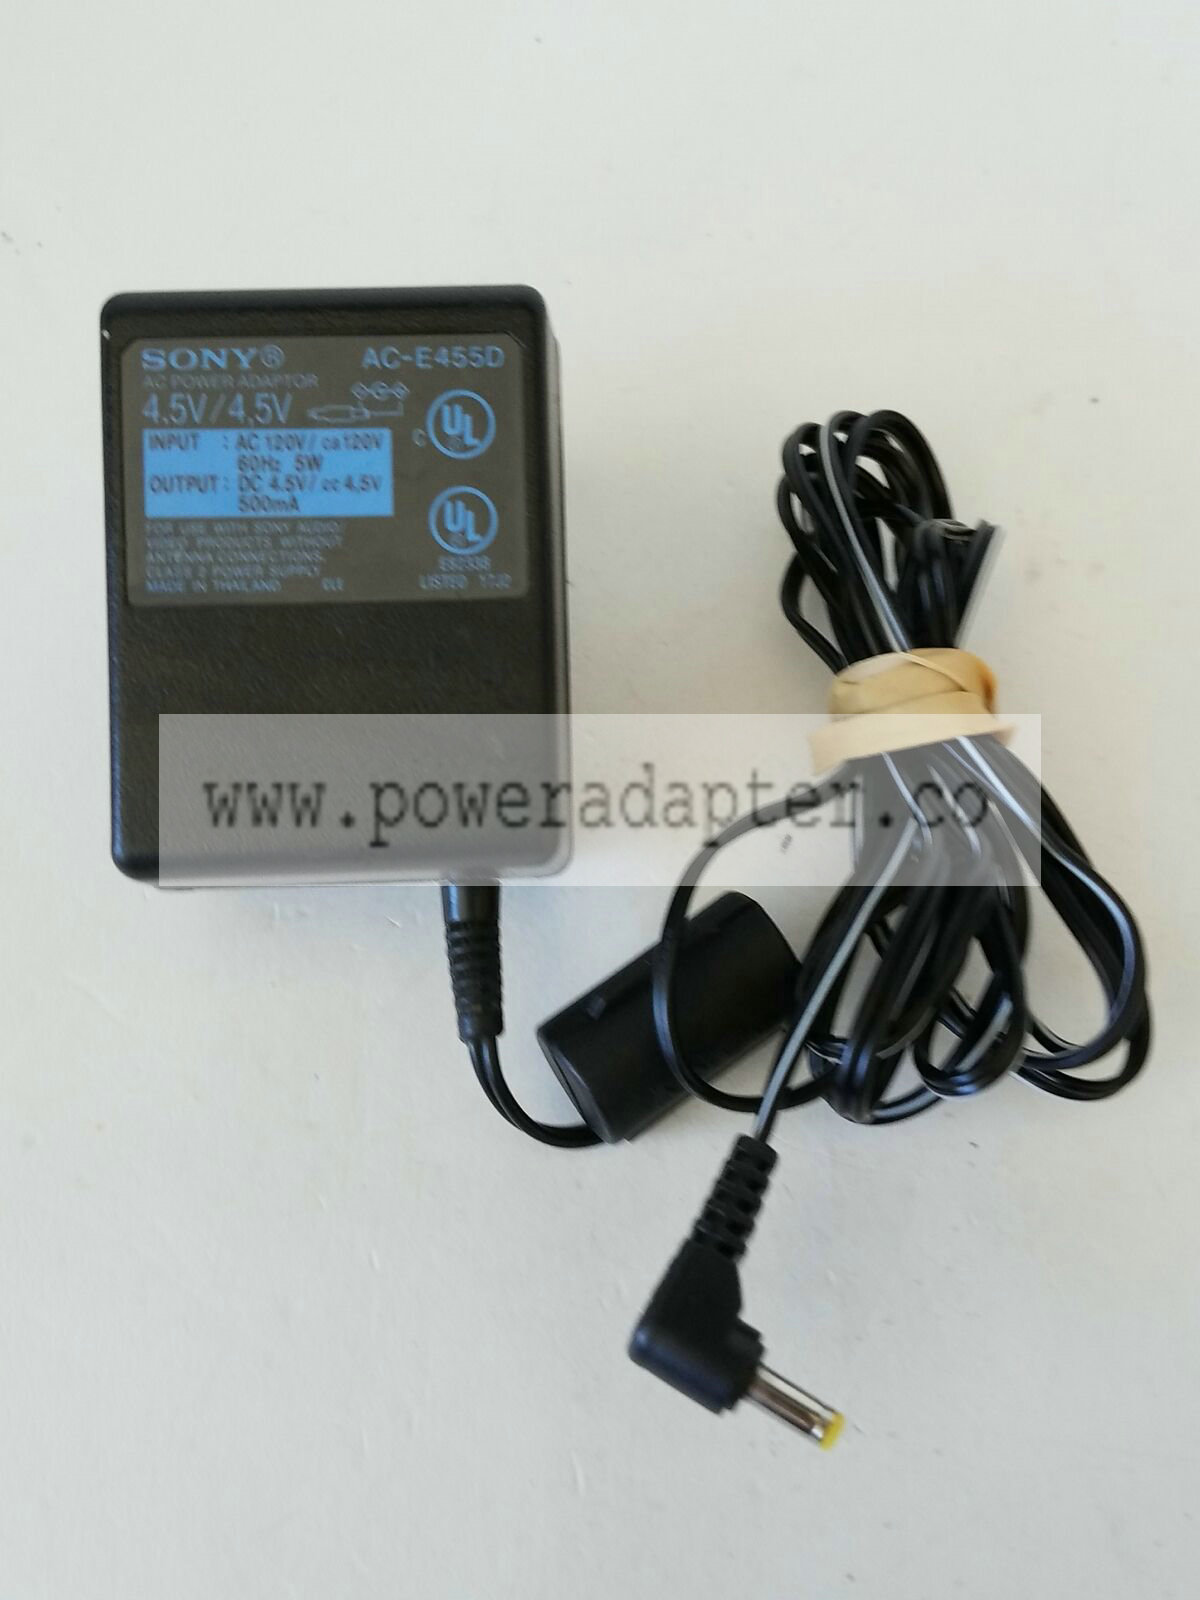 Sony AC-E455D Power Supply AC Adapter 4.5VDC 500mA Brand: Sony MPN: AC-E455D Model: AC-E455D Output Voltage: 4.5V - Click Image to Close